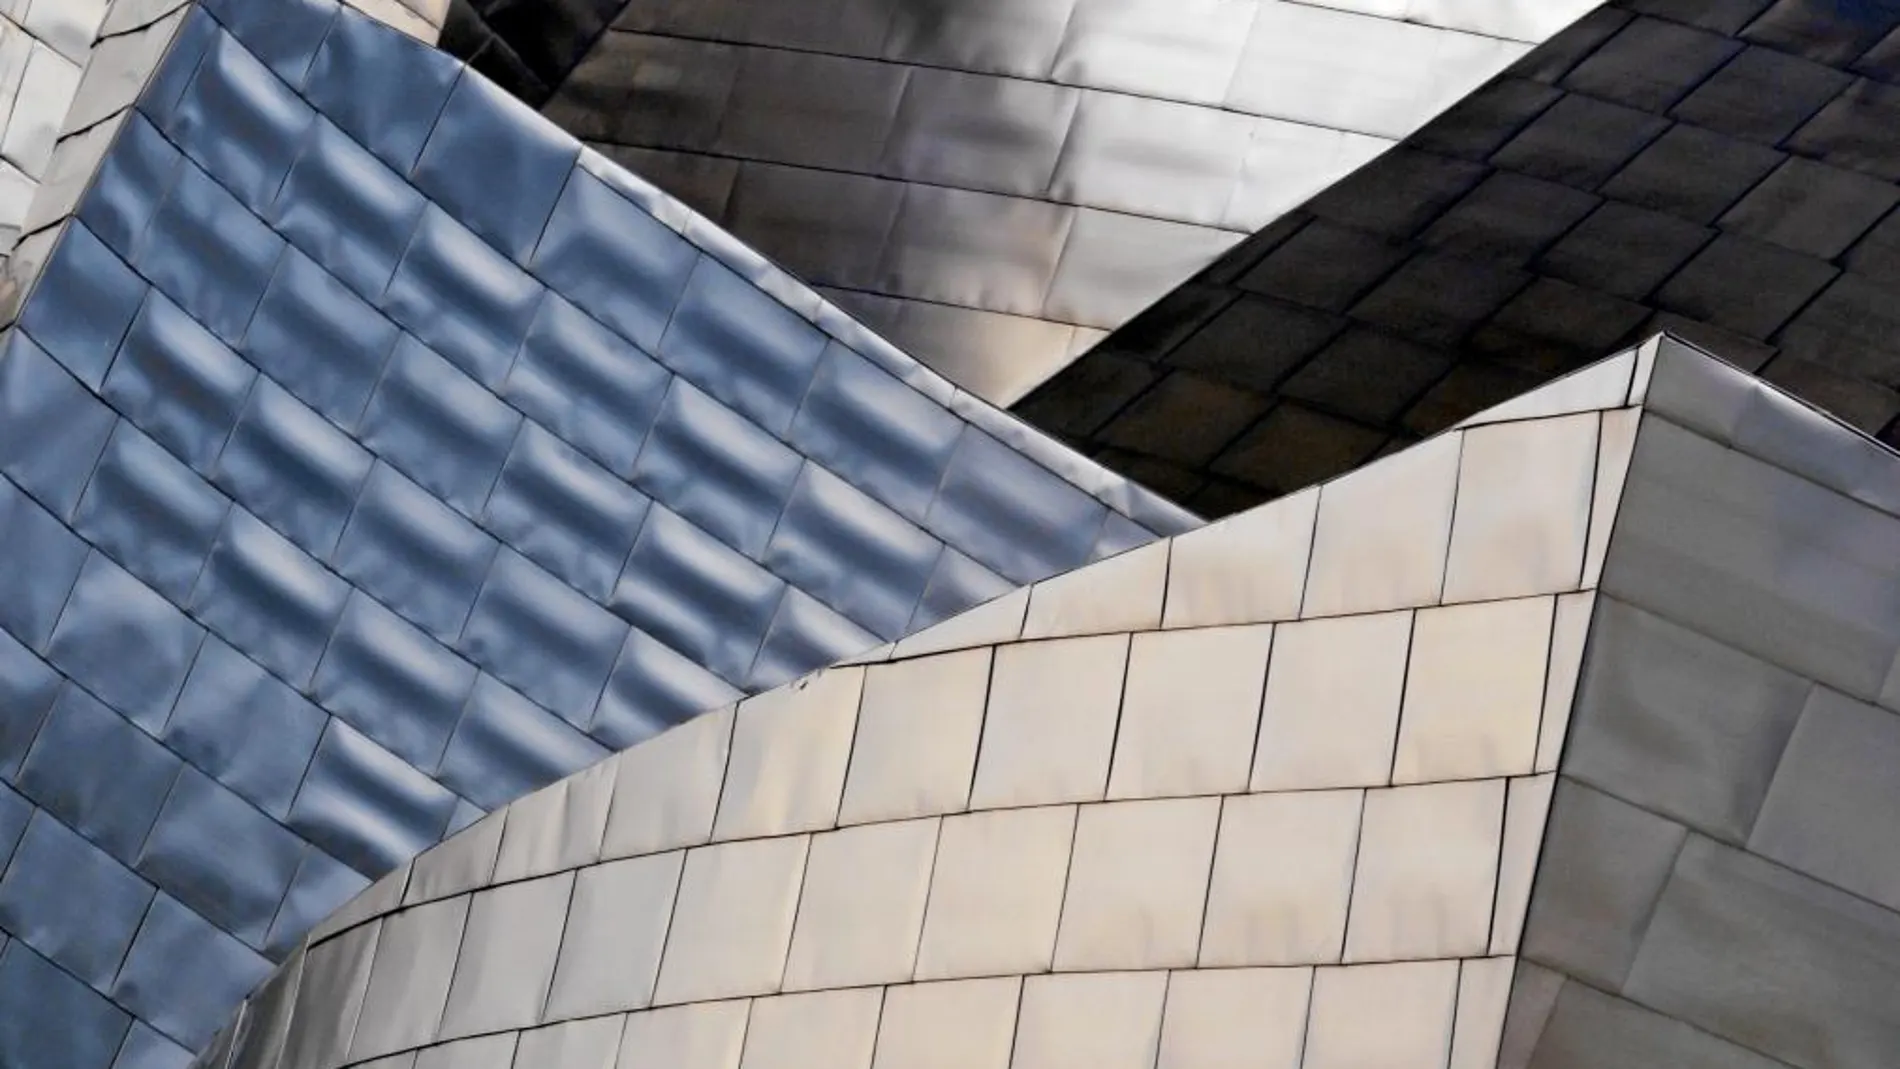 Una imagen de la reconocible fachada del Museo Guggenheim de Bilbao